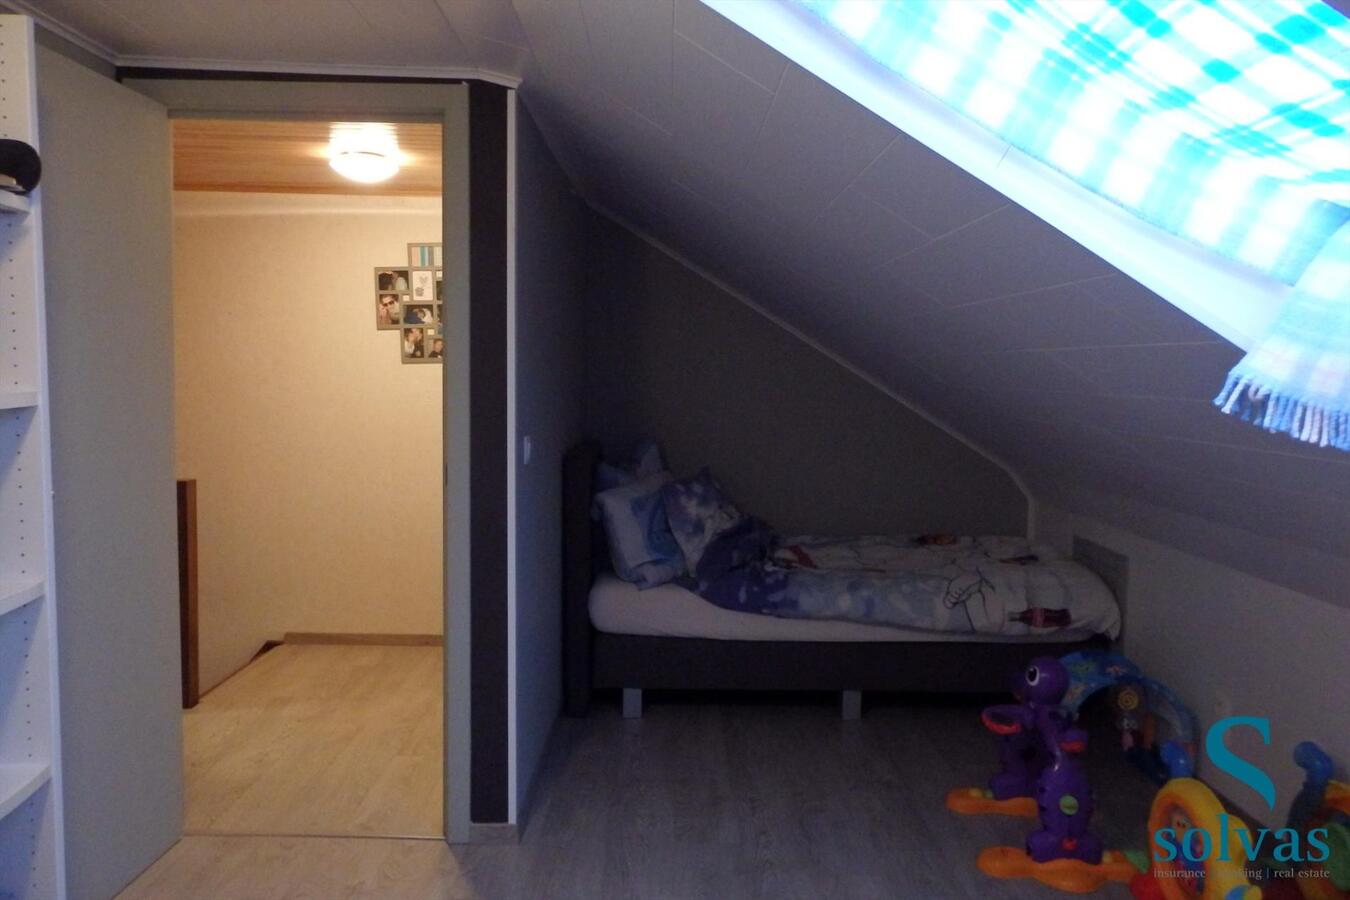 2-slaapkamer appartement in Waarschoot! 